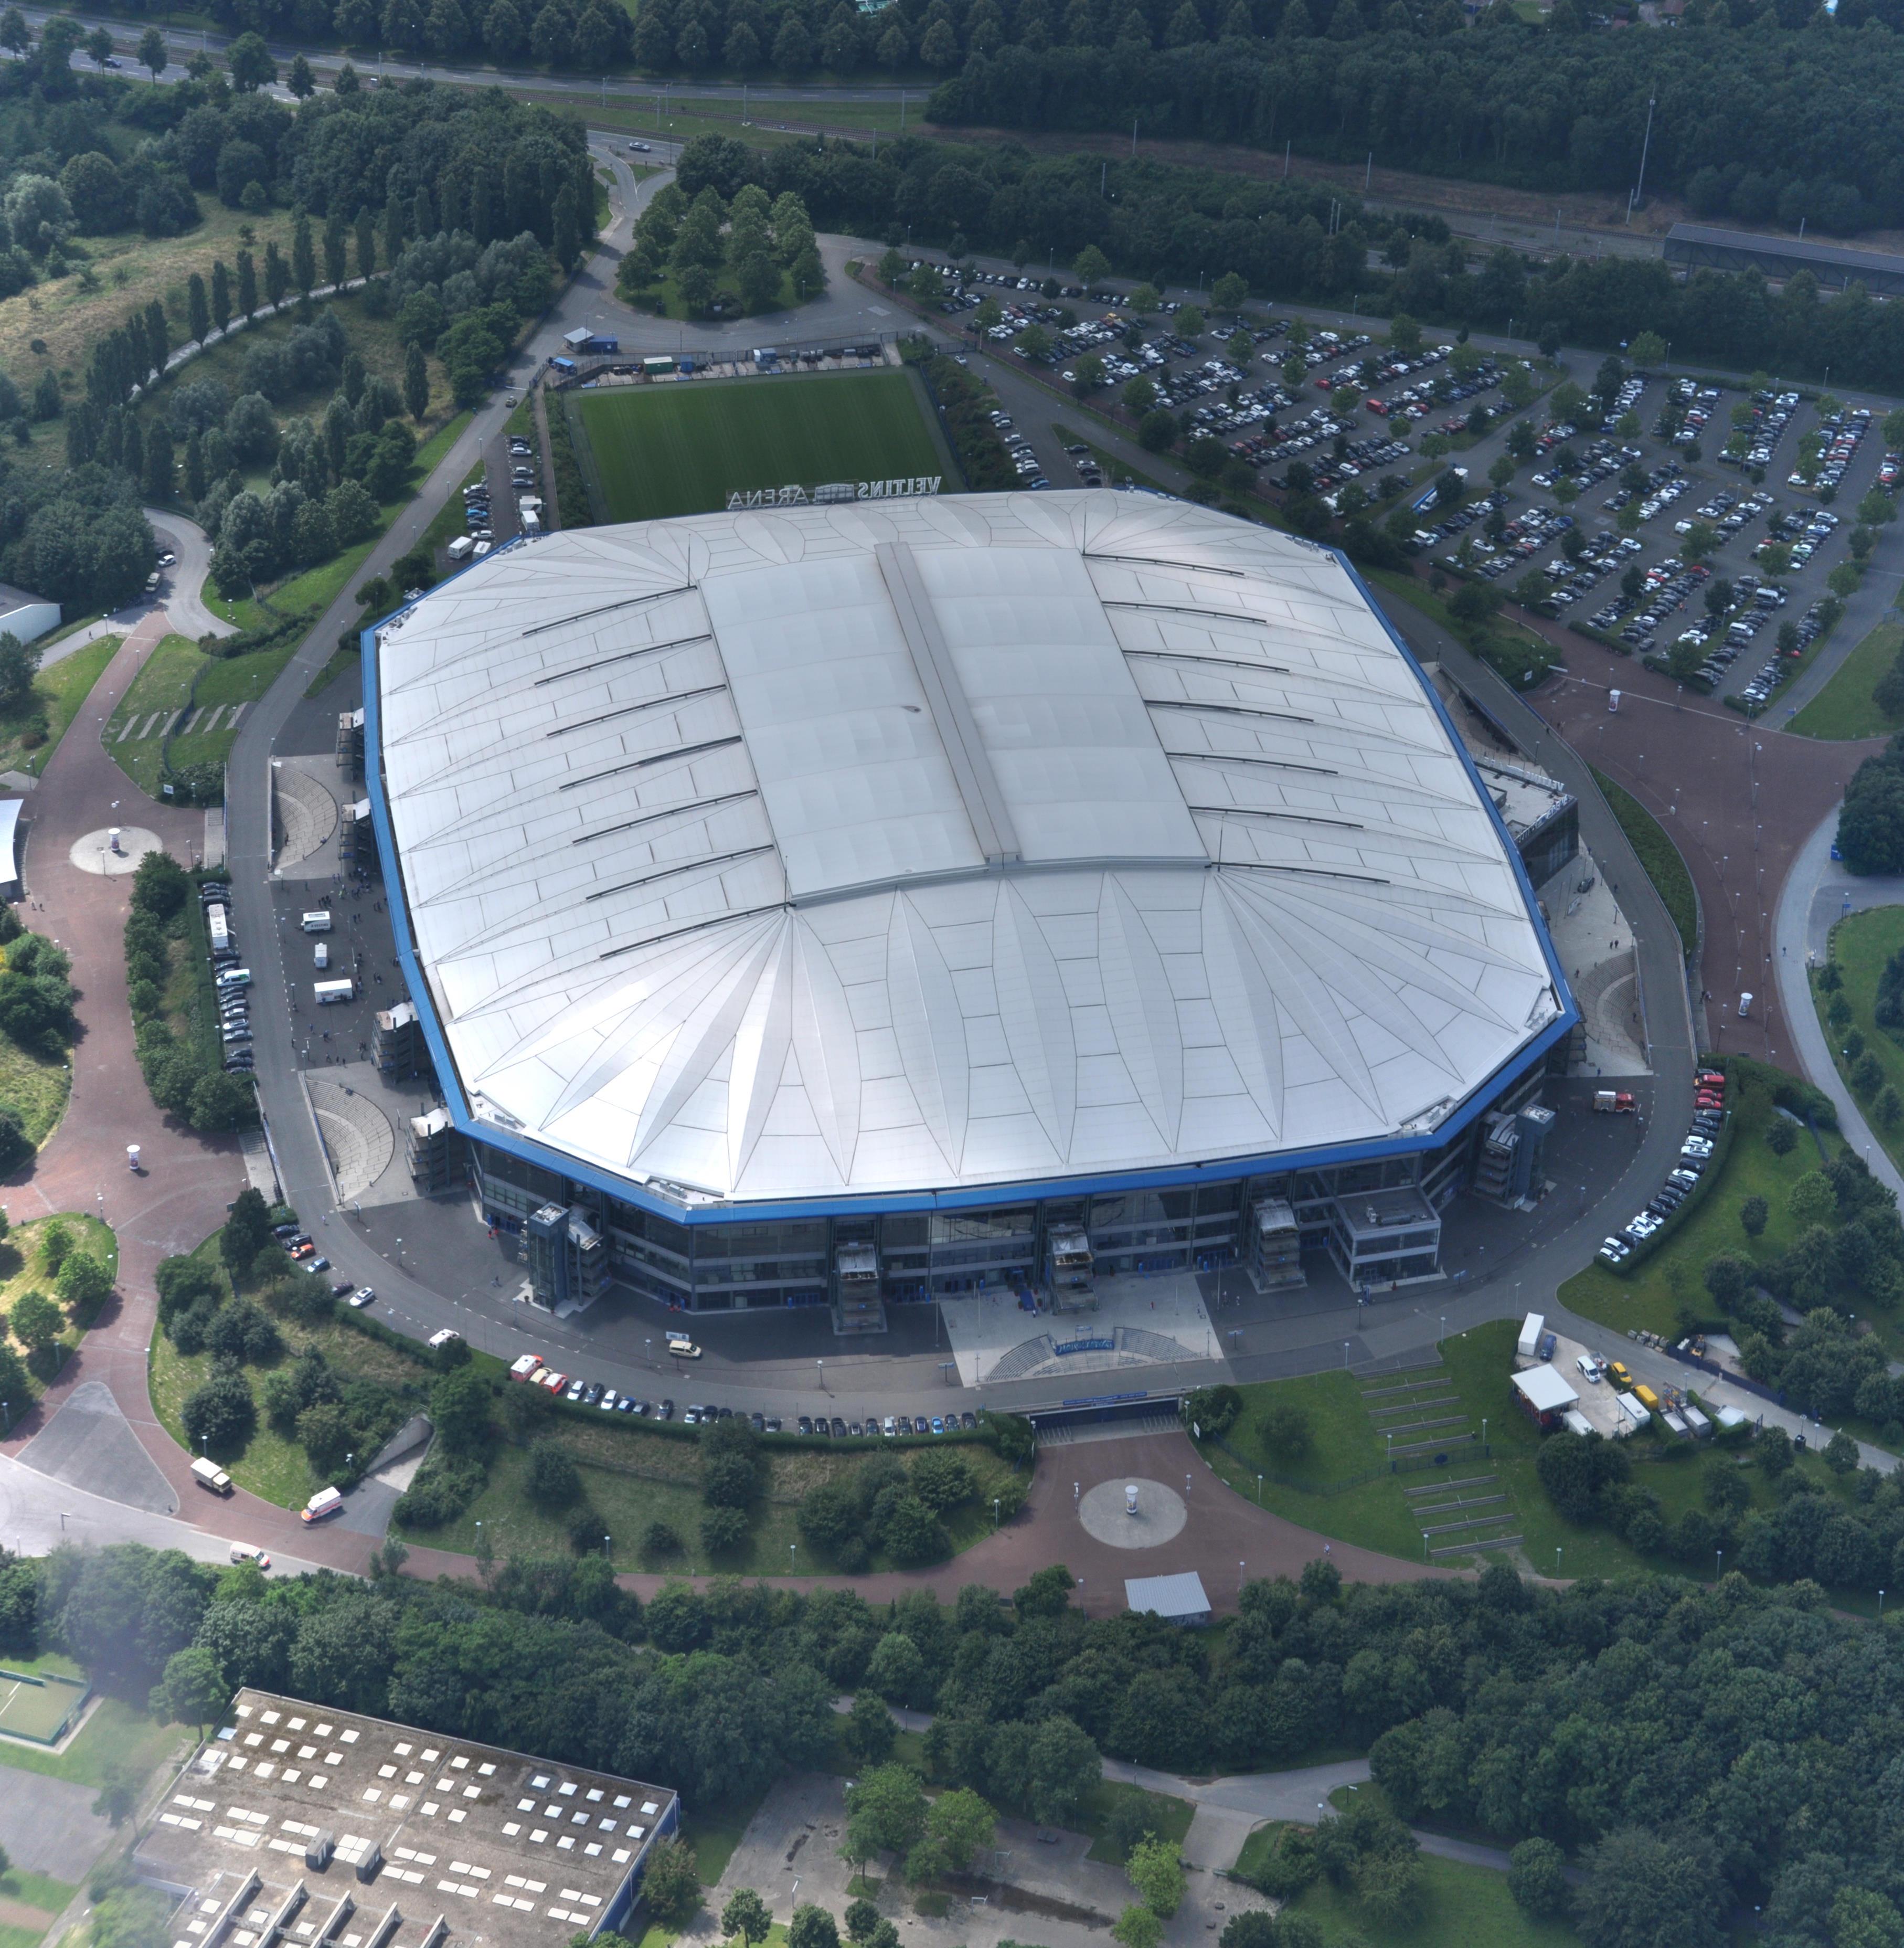 Die Arena AufSchalke ist umgeben von Bäumen und Parkplätzen.